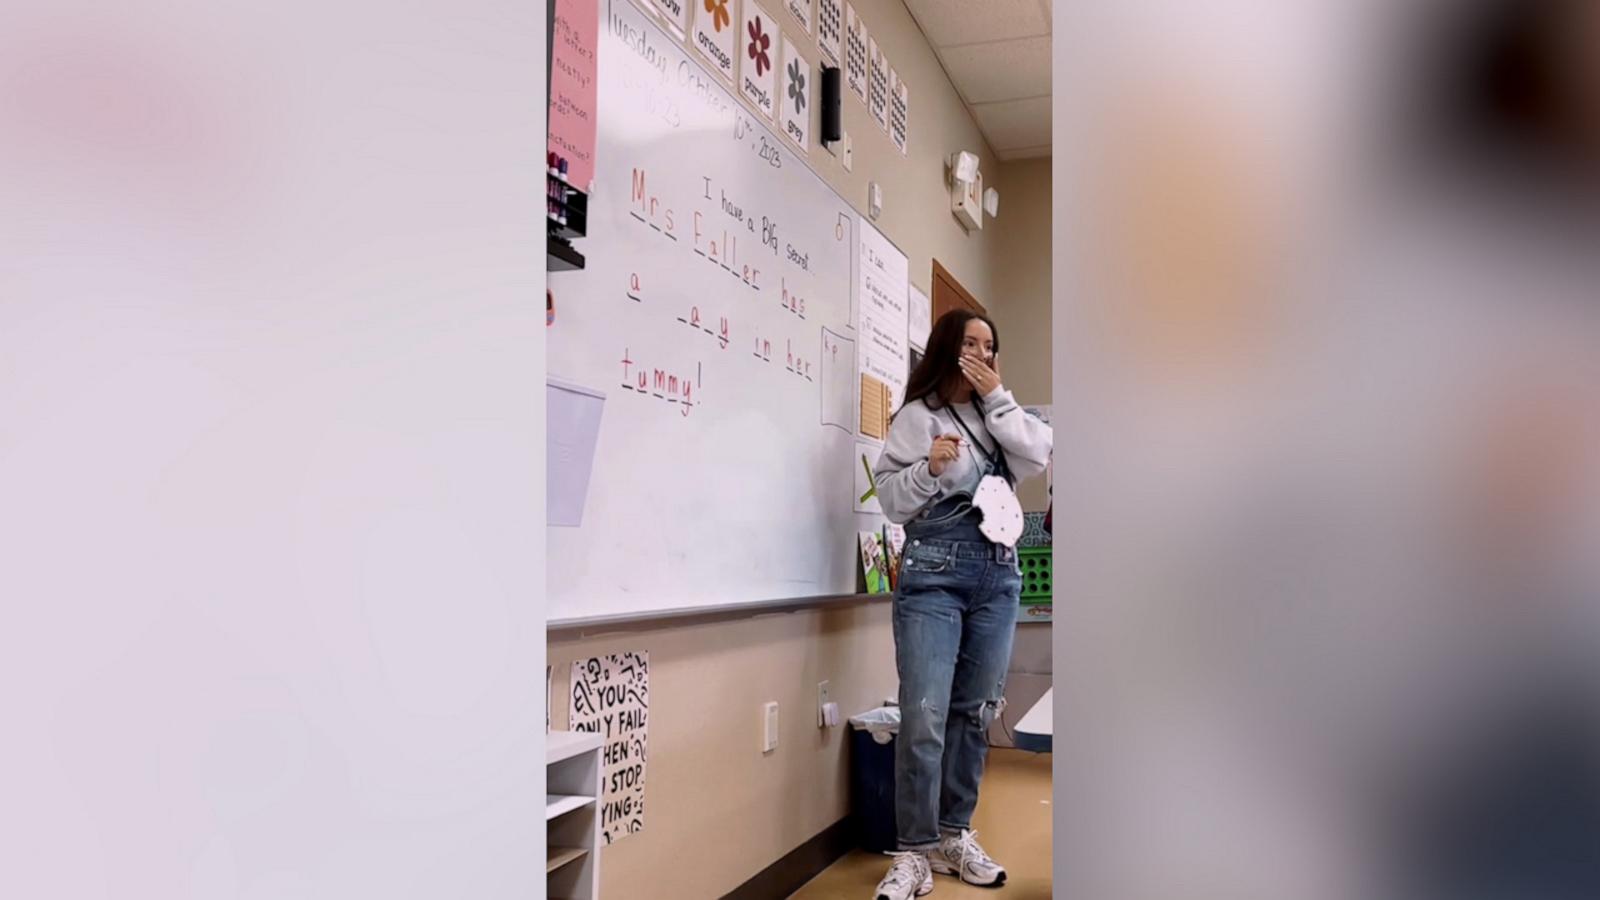 VIDEO: Teacher surprises students with pregnancy announcement